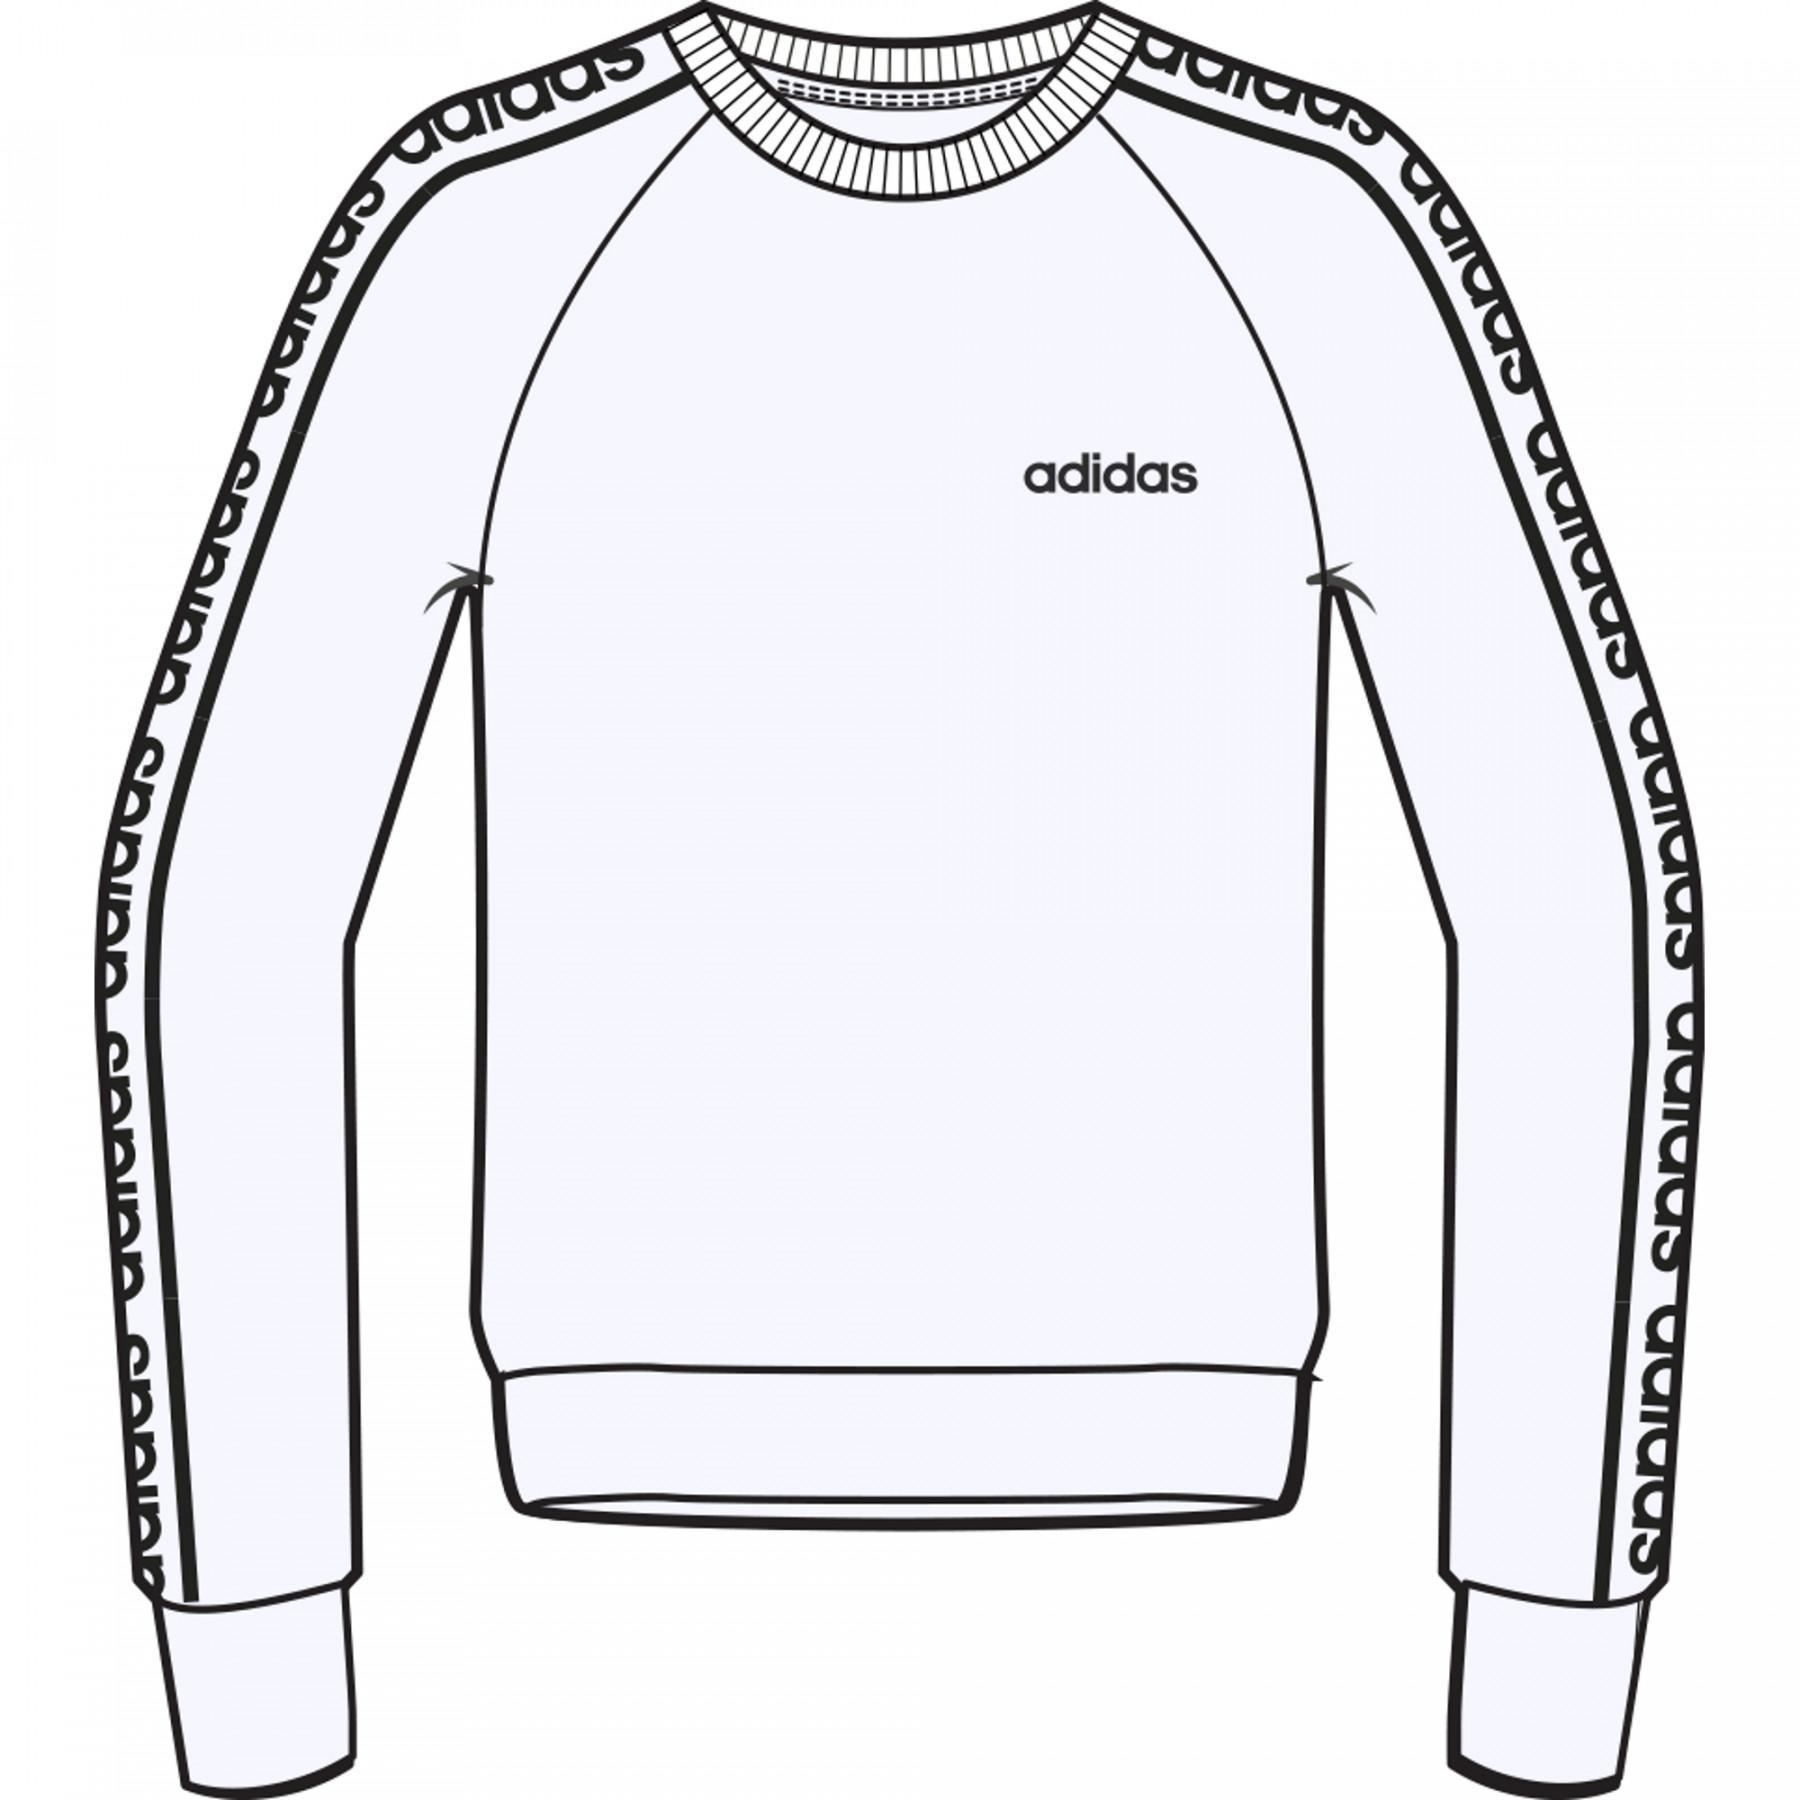 Damen-Sweatshirt adidas Osr w C90